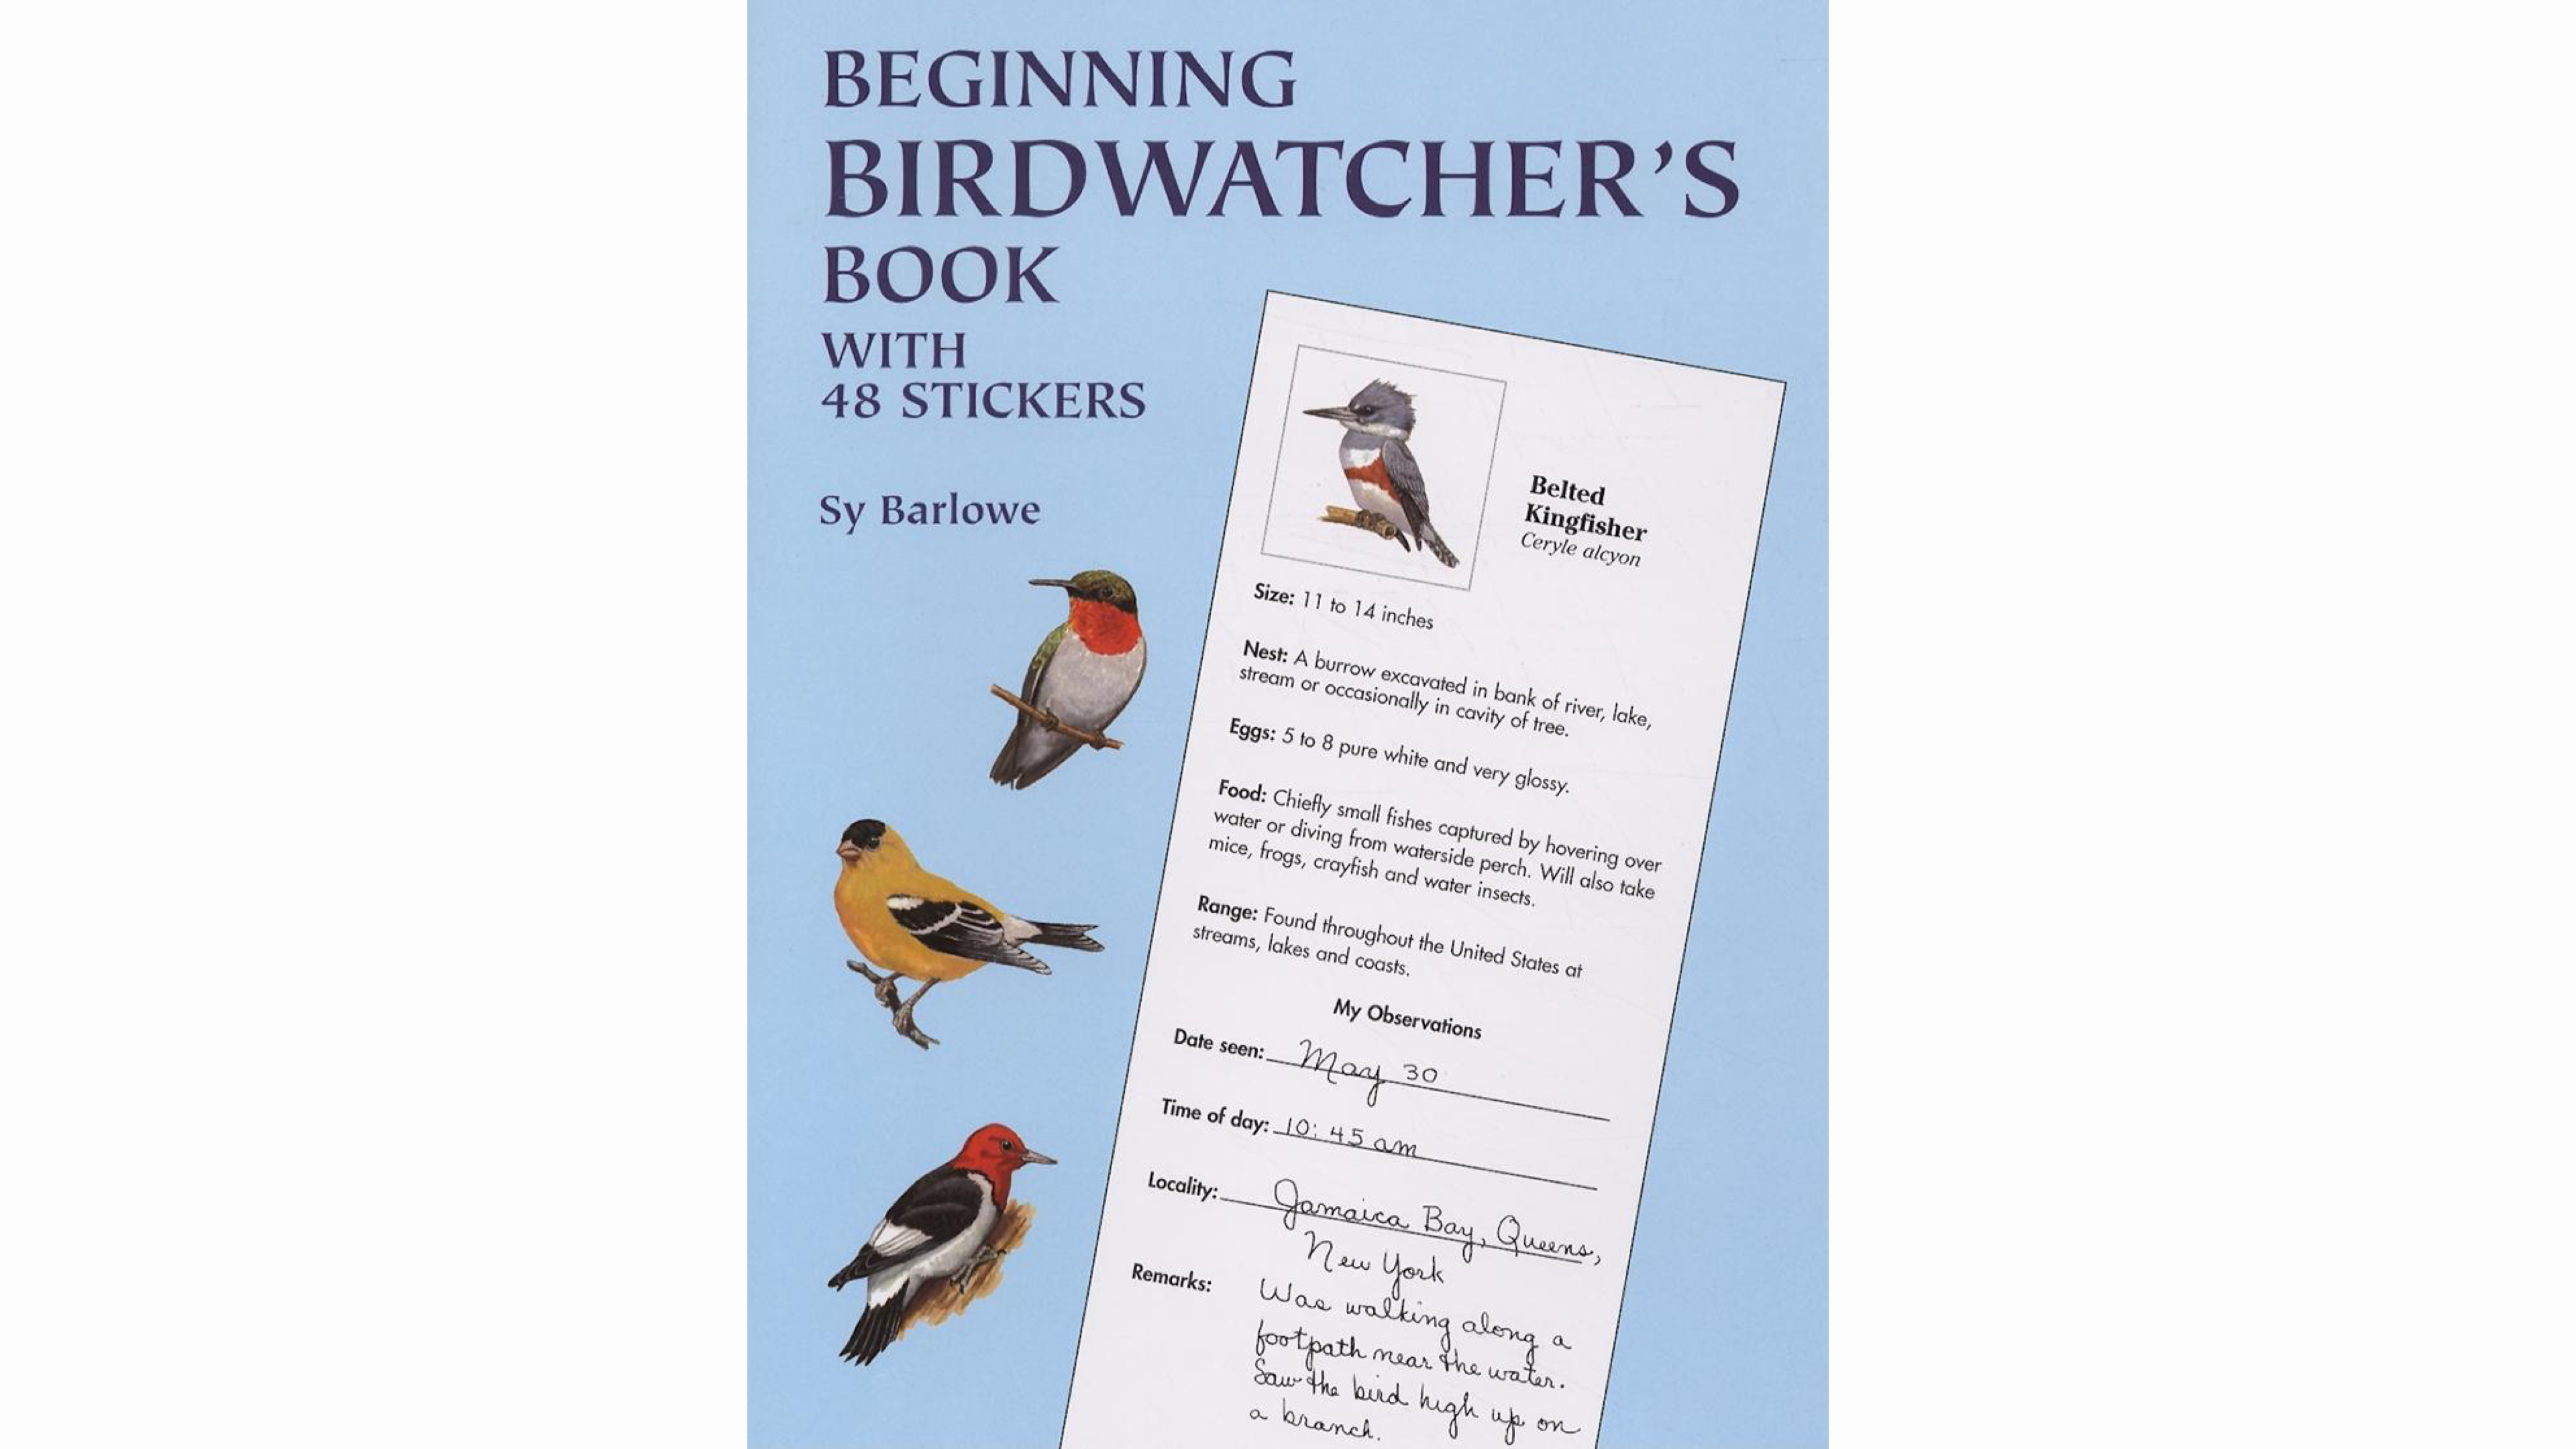 birdwatching book for beginners